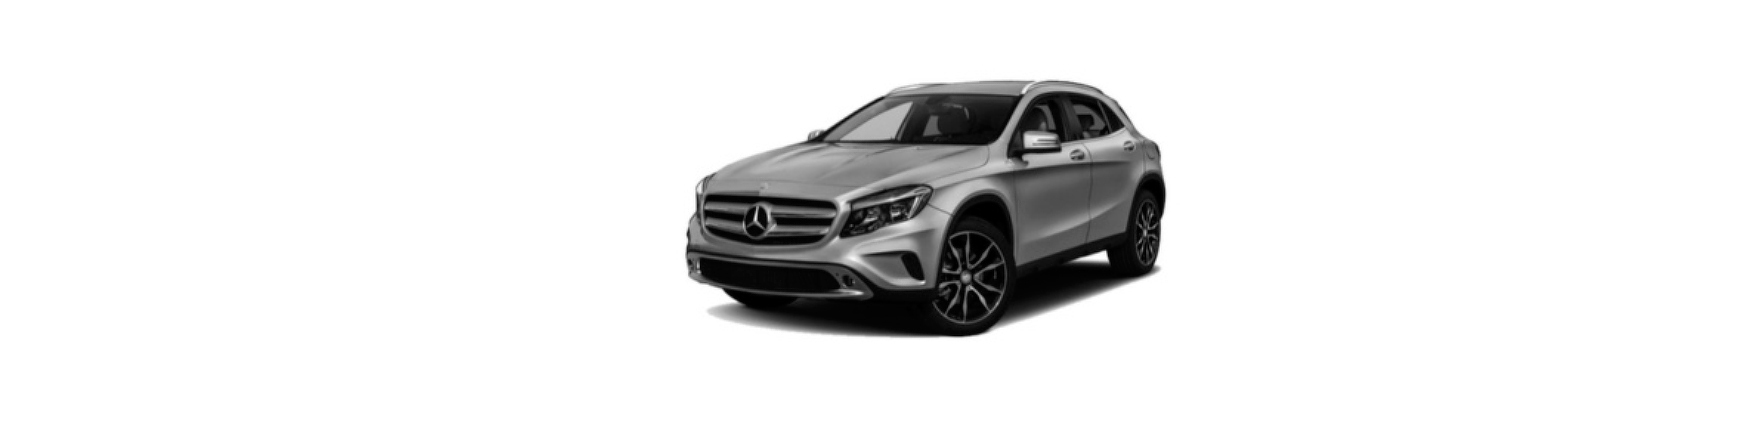 Repuestos de Mercedes Clase GLA (X156) de 2013 a 2020 | Veramauto.es